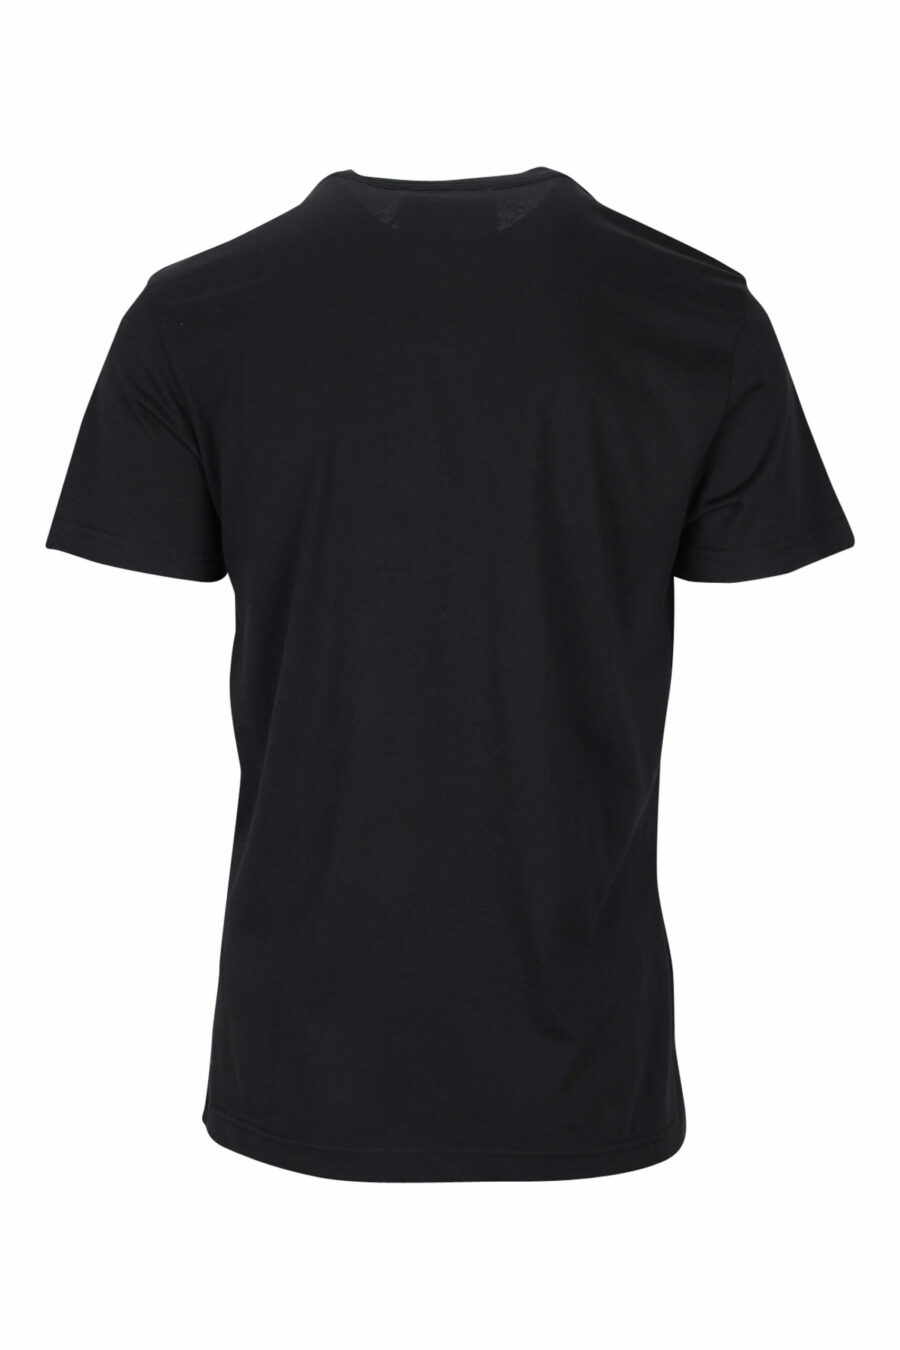 Schwarzes T-Shirt mit goldglänzendem klassischen Maxilogo - 8052019456783 1 skaliert